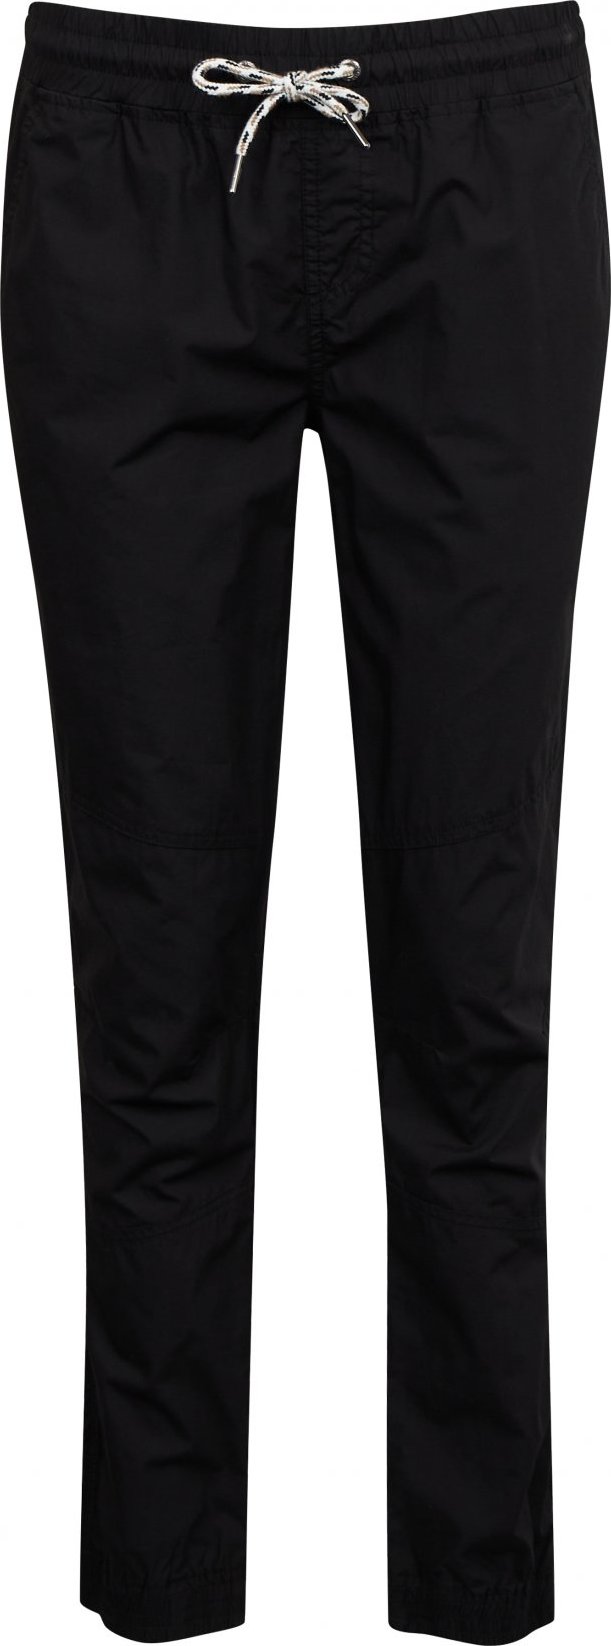 Dámské kalhoty SAM 73 Iah černé Velikost: XL